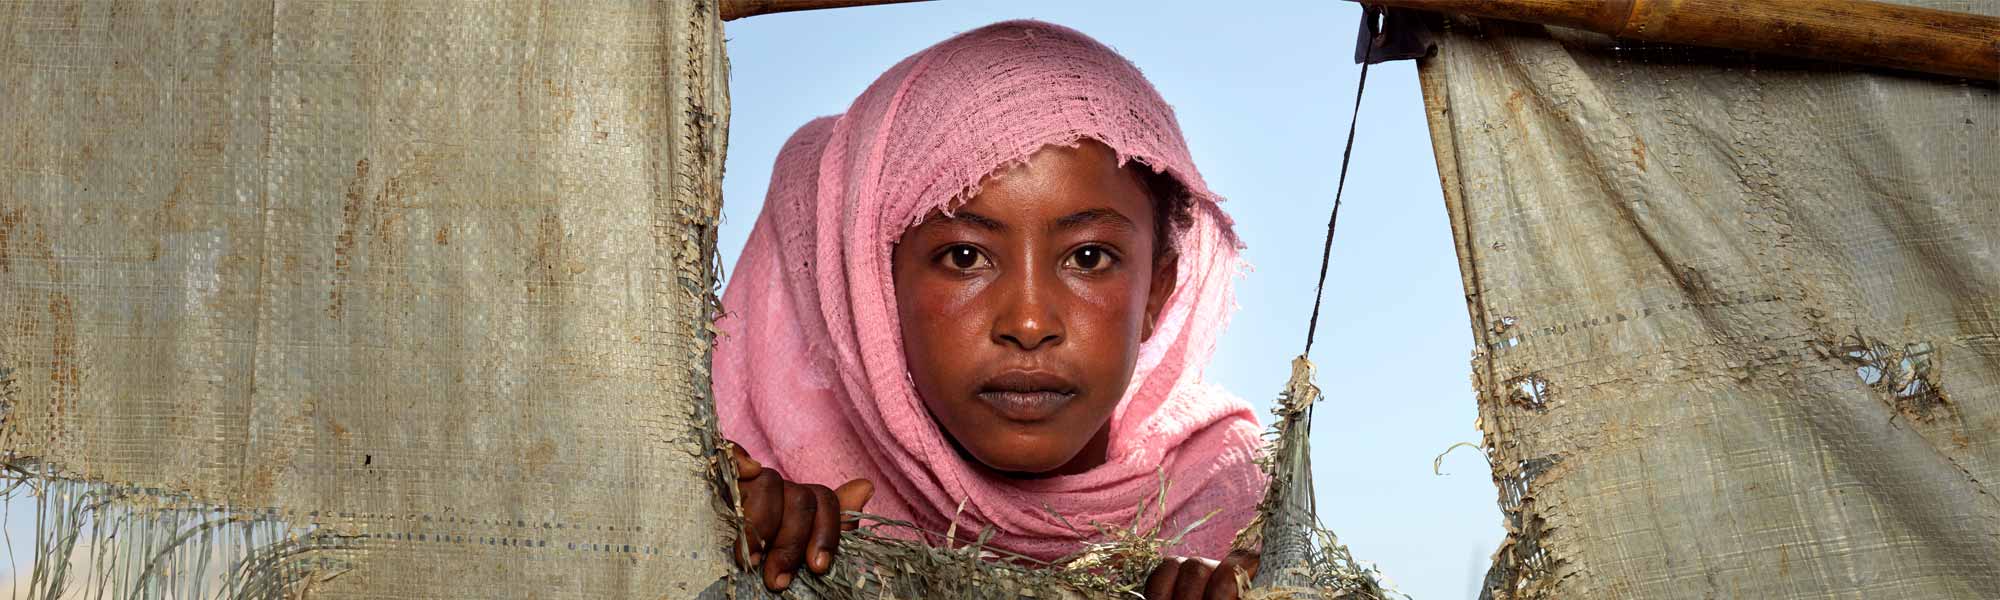 Jente fra Sudan titter.